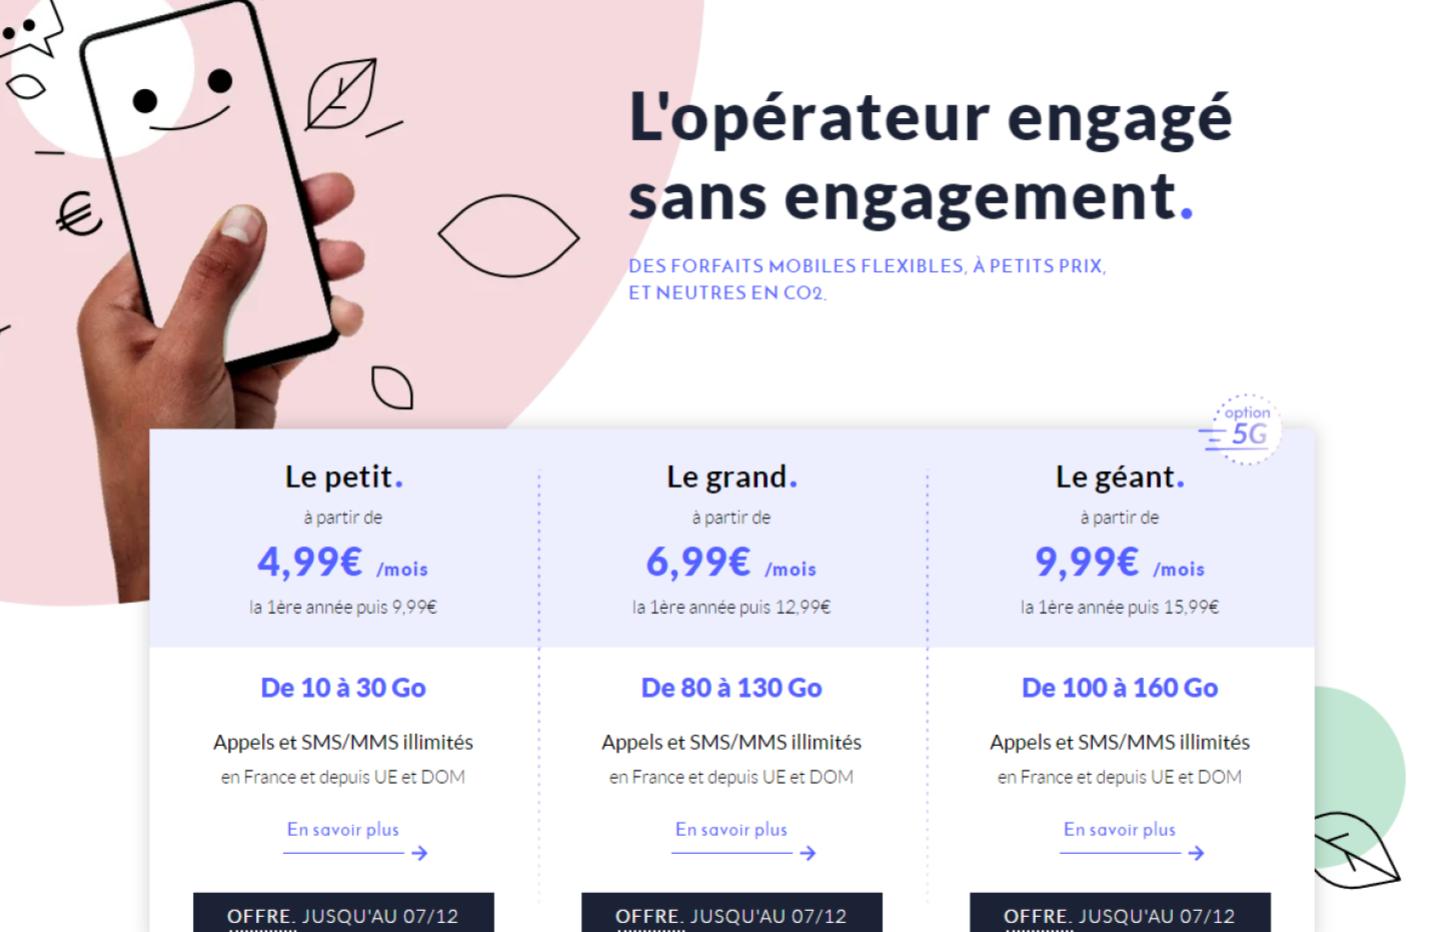 Forfait mobile : Offre mobile sans engagement - Prixtel